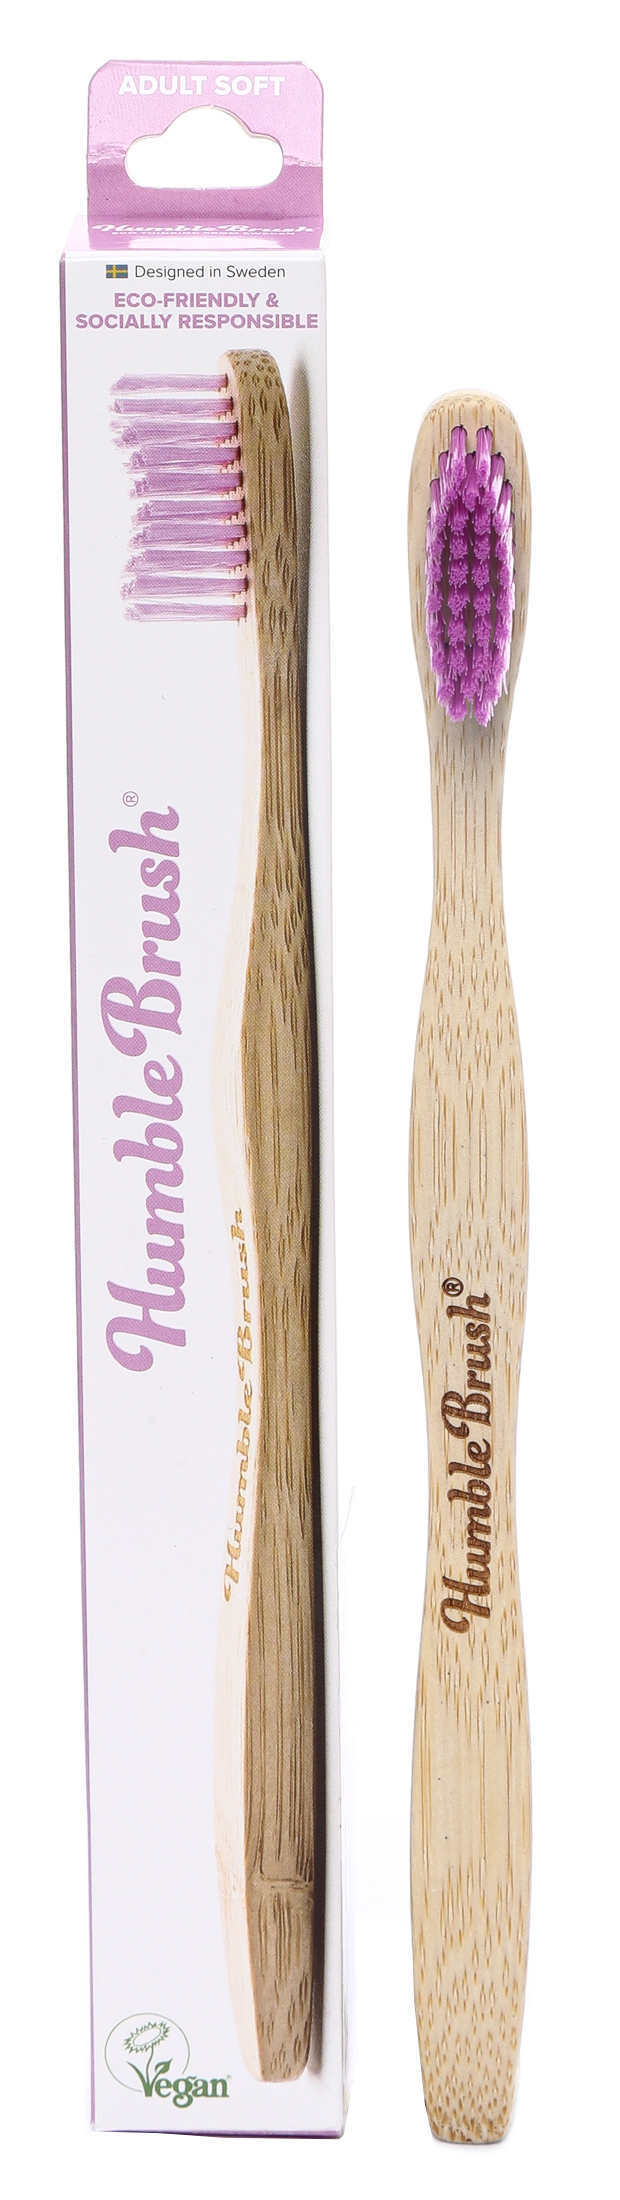 Купить Зубная щетка для взрослых HUMBLE BRUSH из бамбука, фиолетовая щетина средней жесткости, The Humble Co.